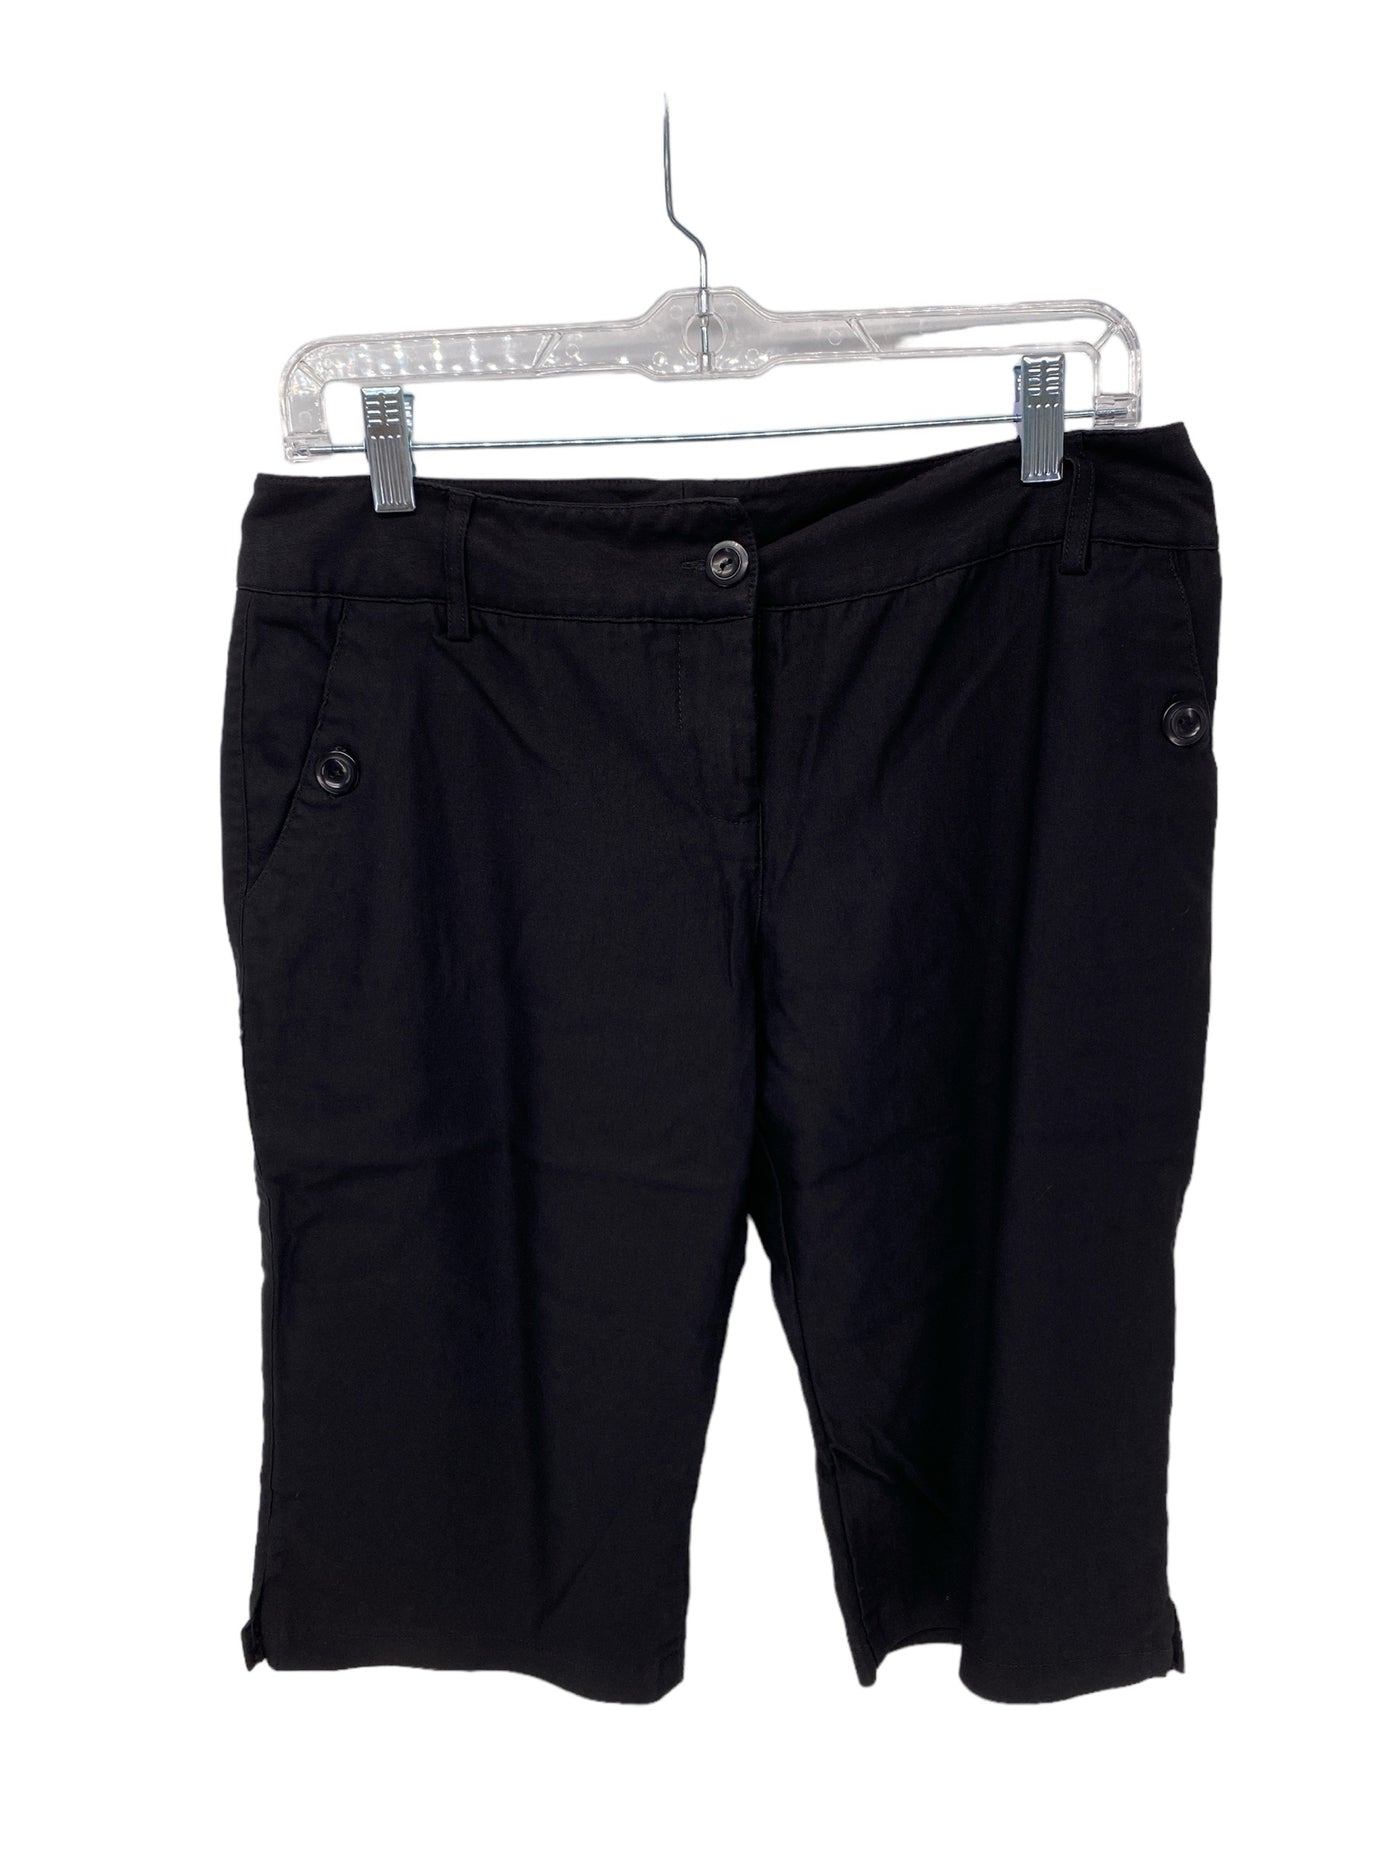 IZ Byer Misses Size 11/30 Black Shorts